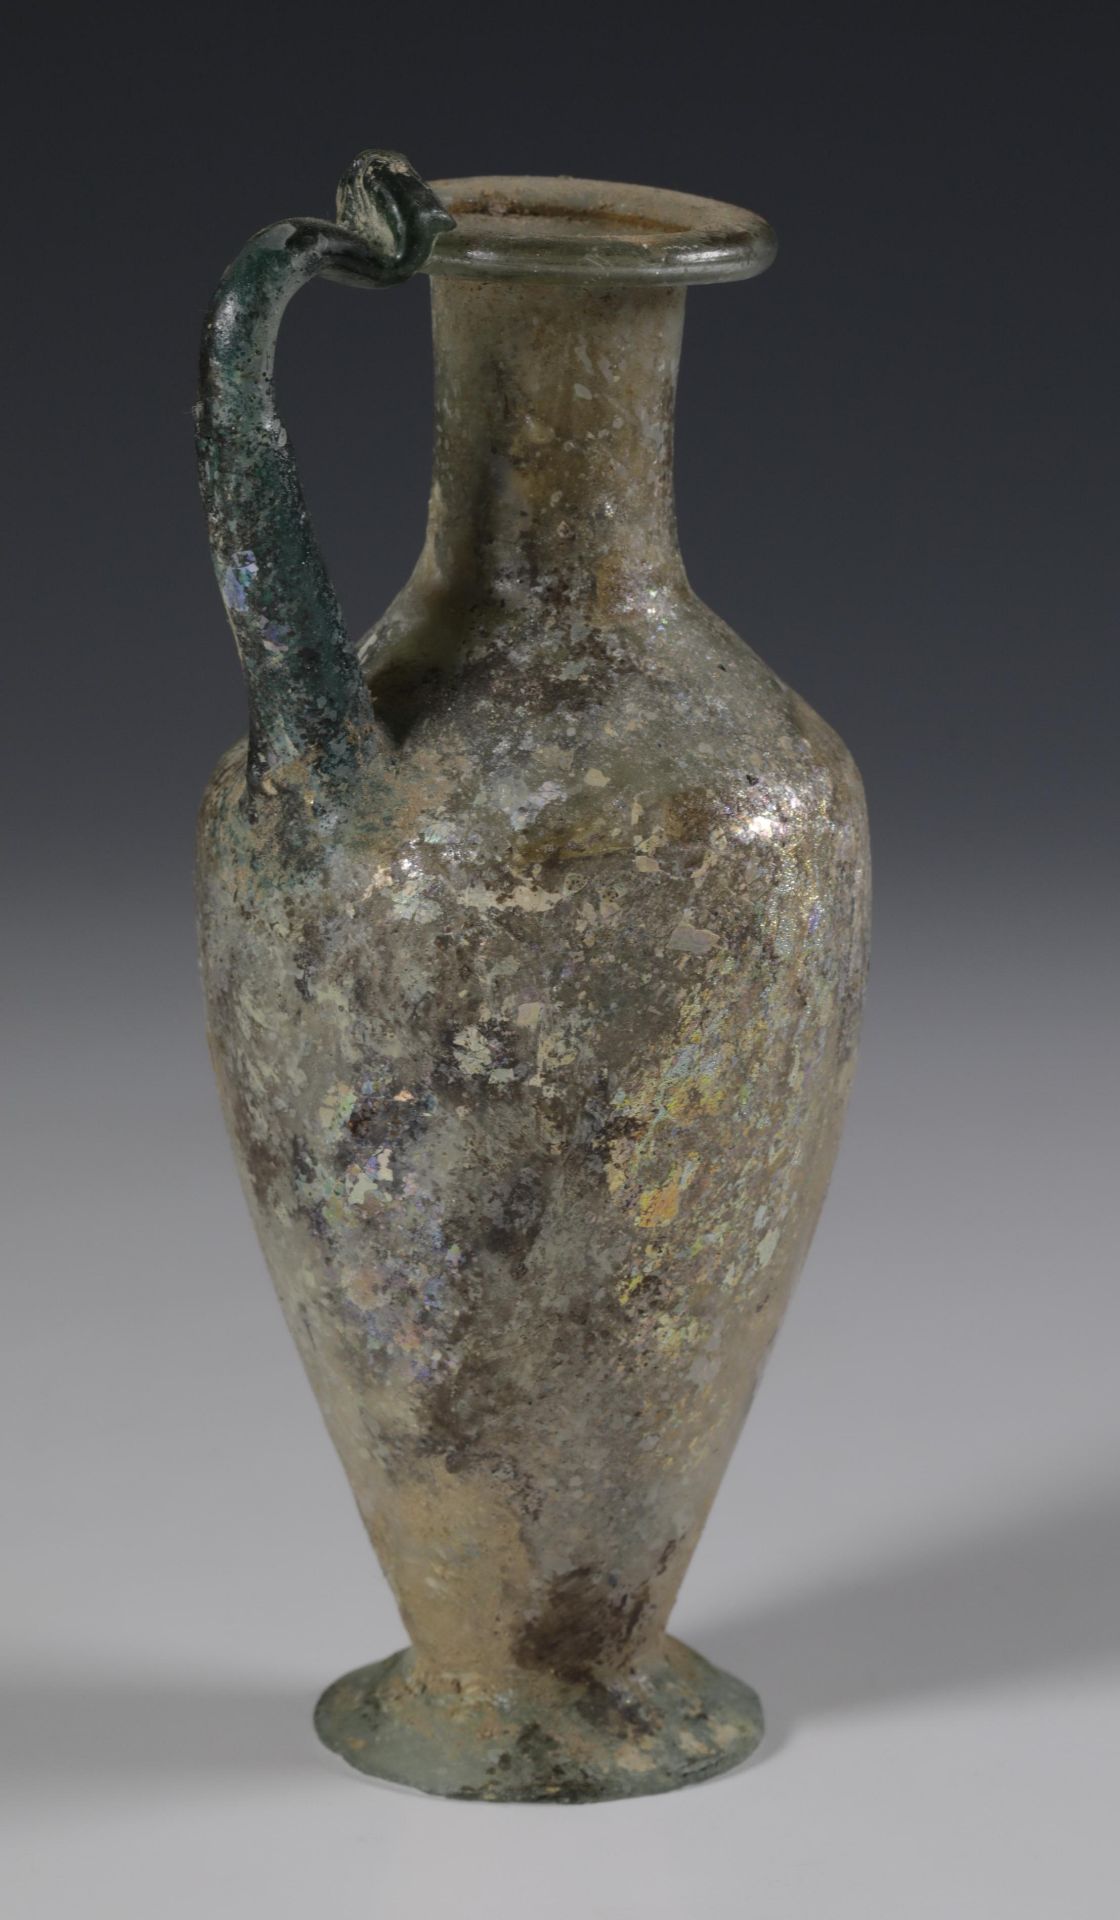 A fine Roman glass flacon, ca. 3rd-4th century - Image 2 of 7